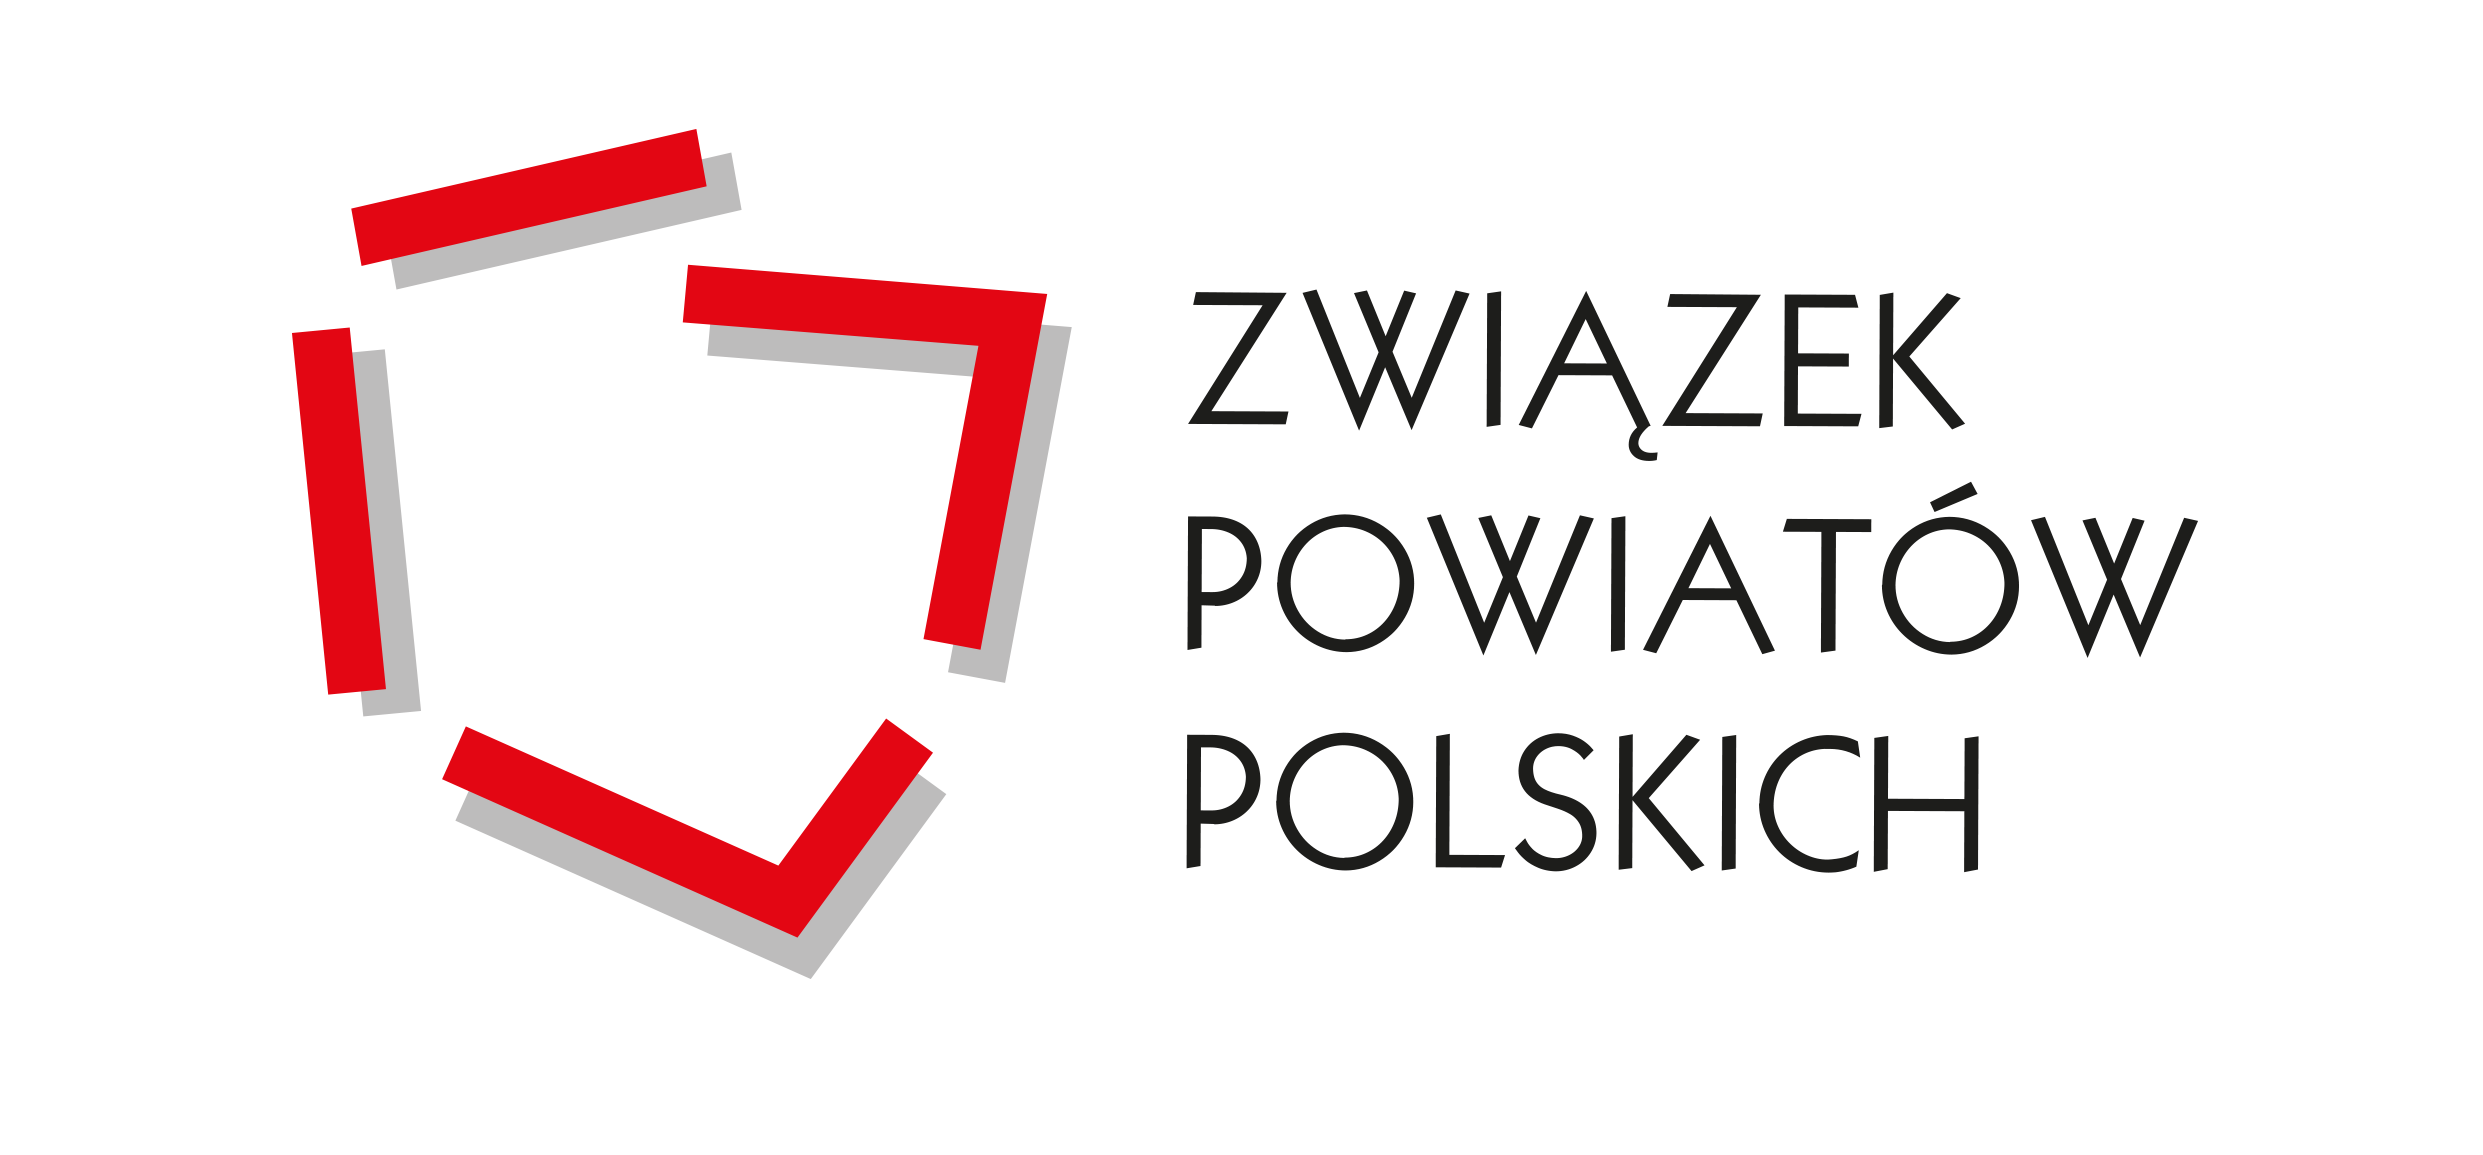 Baner: Związek Powiatów Polskich